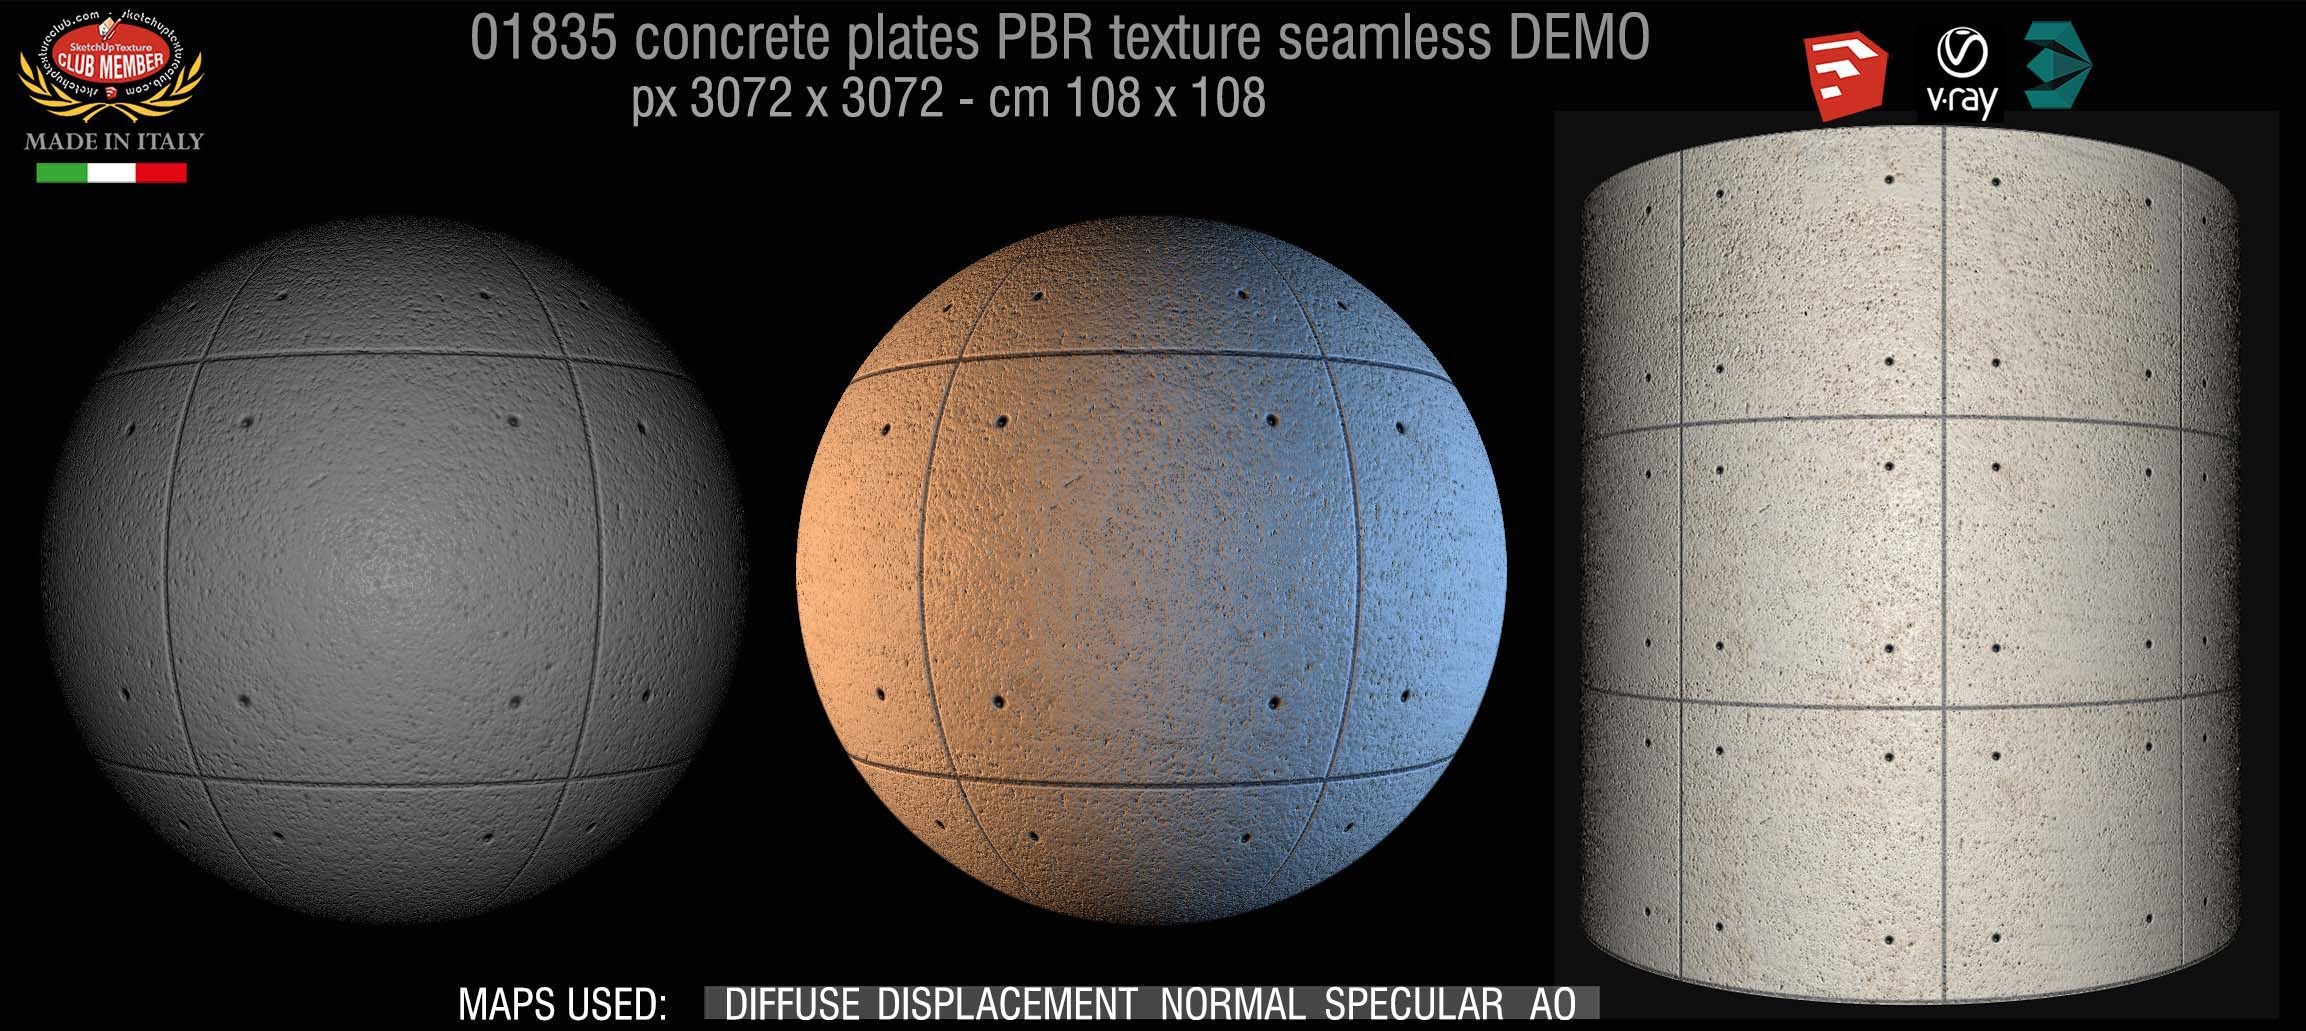 01835 Tadao Ando concrete plates PBR texture seamless DEMO